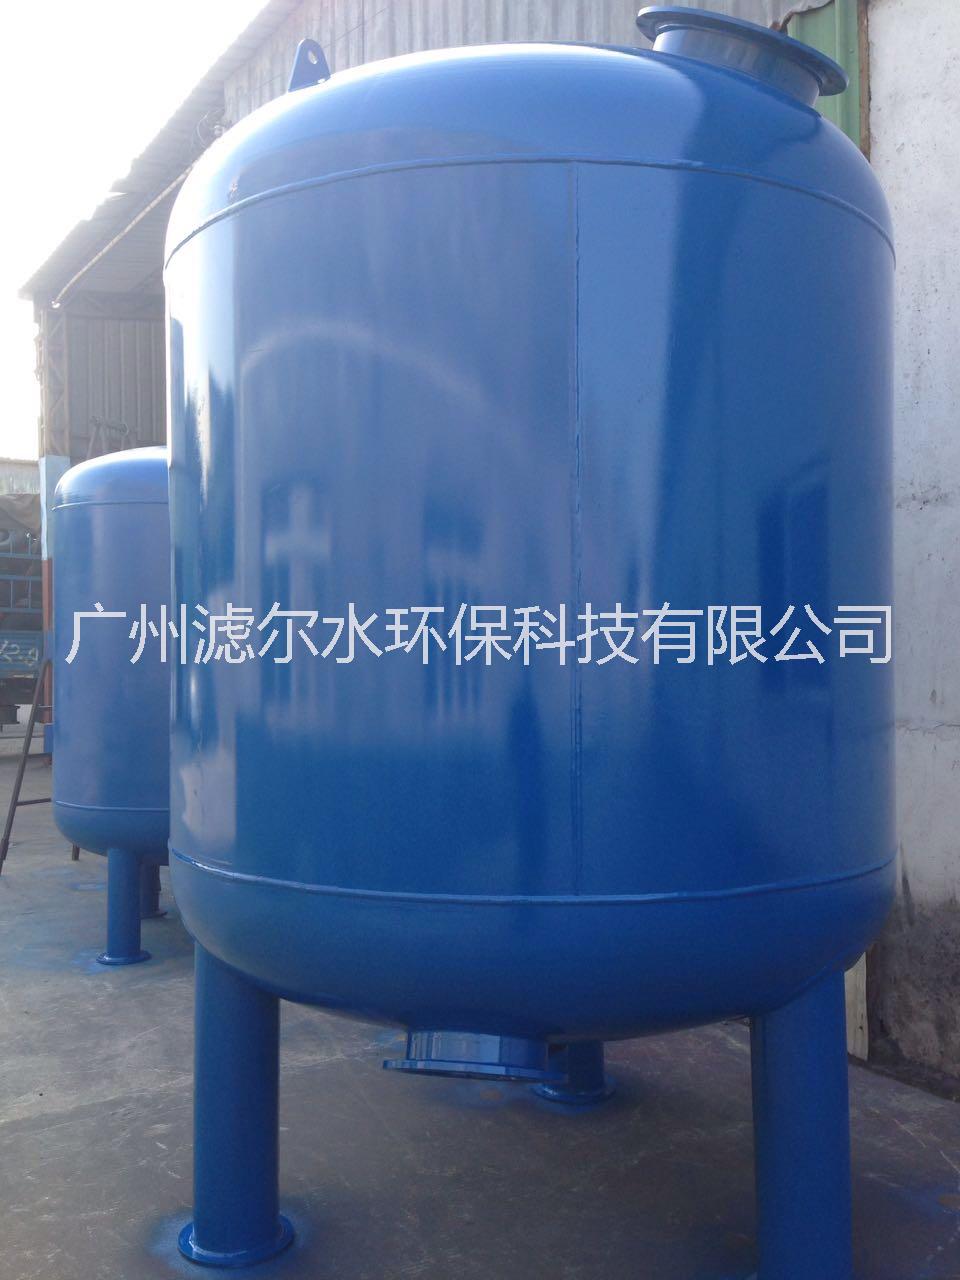 供应贵州六水5吨Q235碳钢罐 效果非常好  质量保证 值得信赖